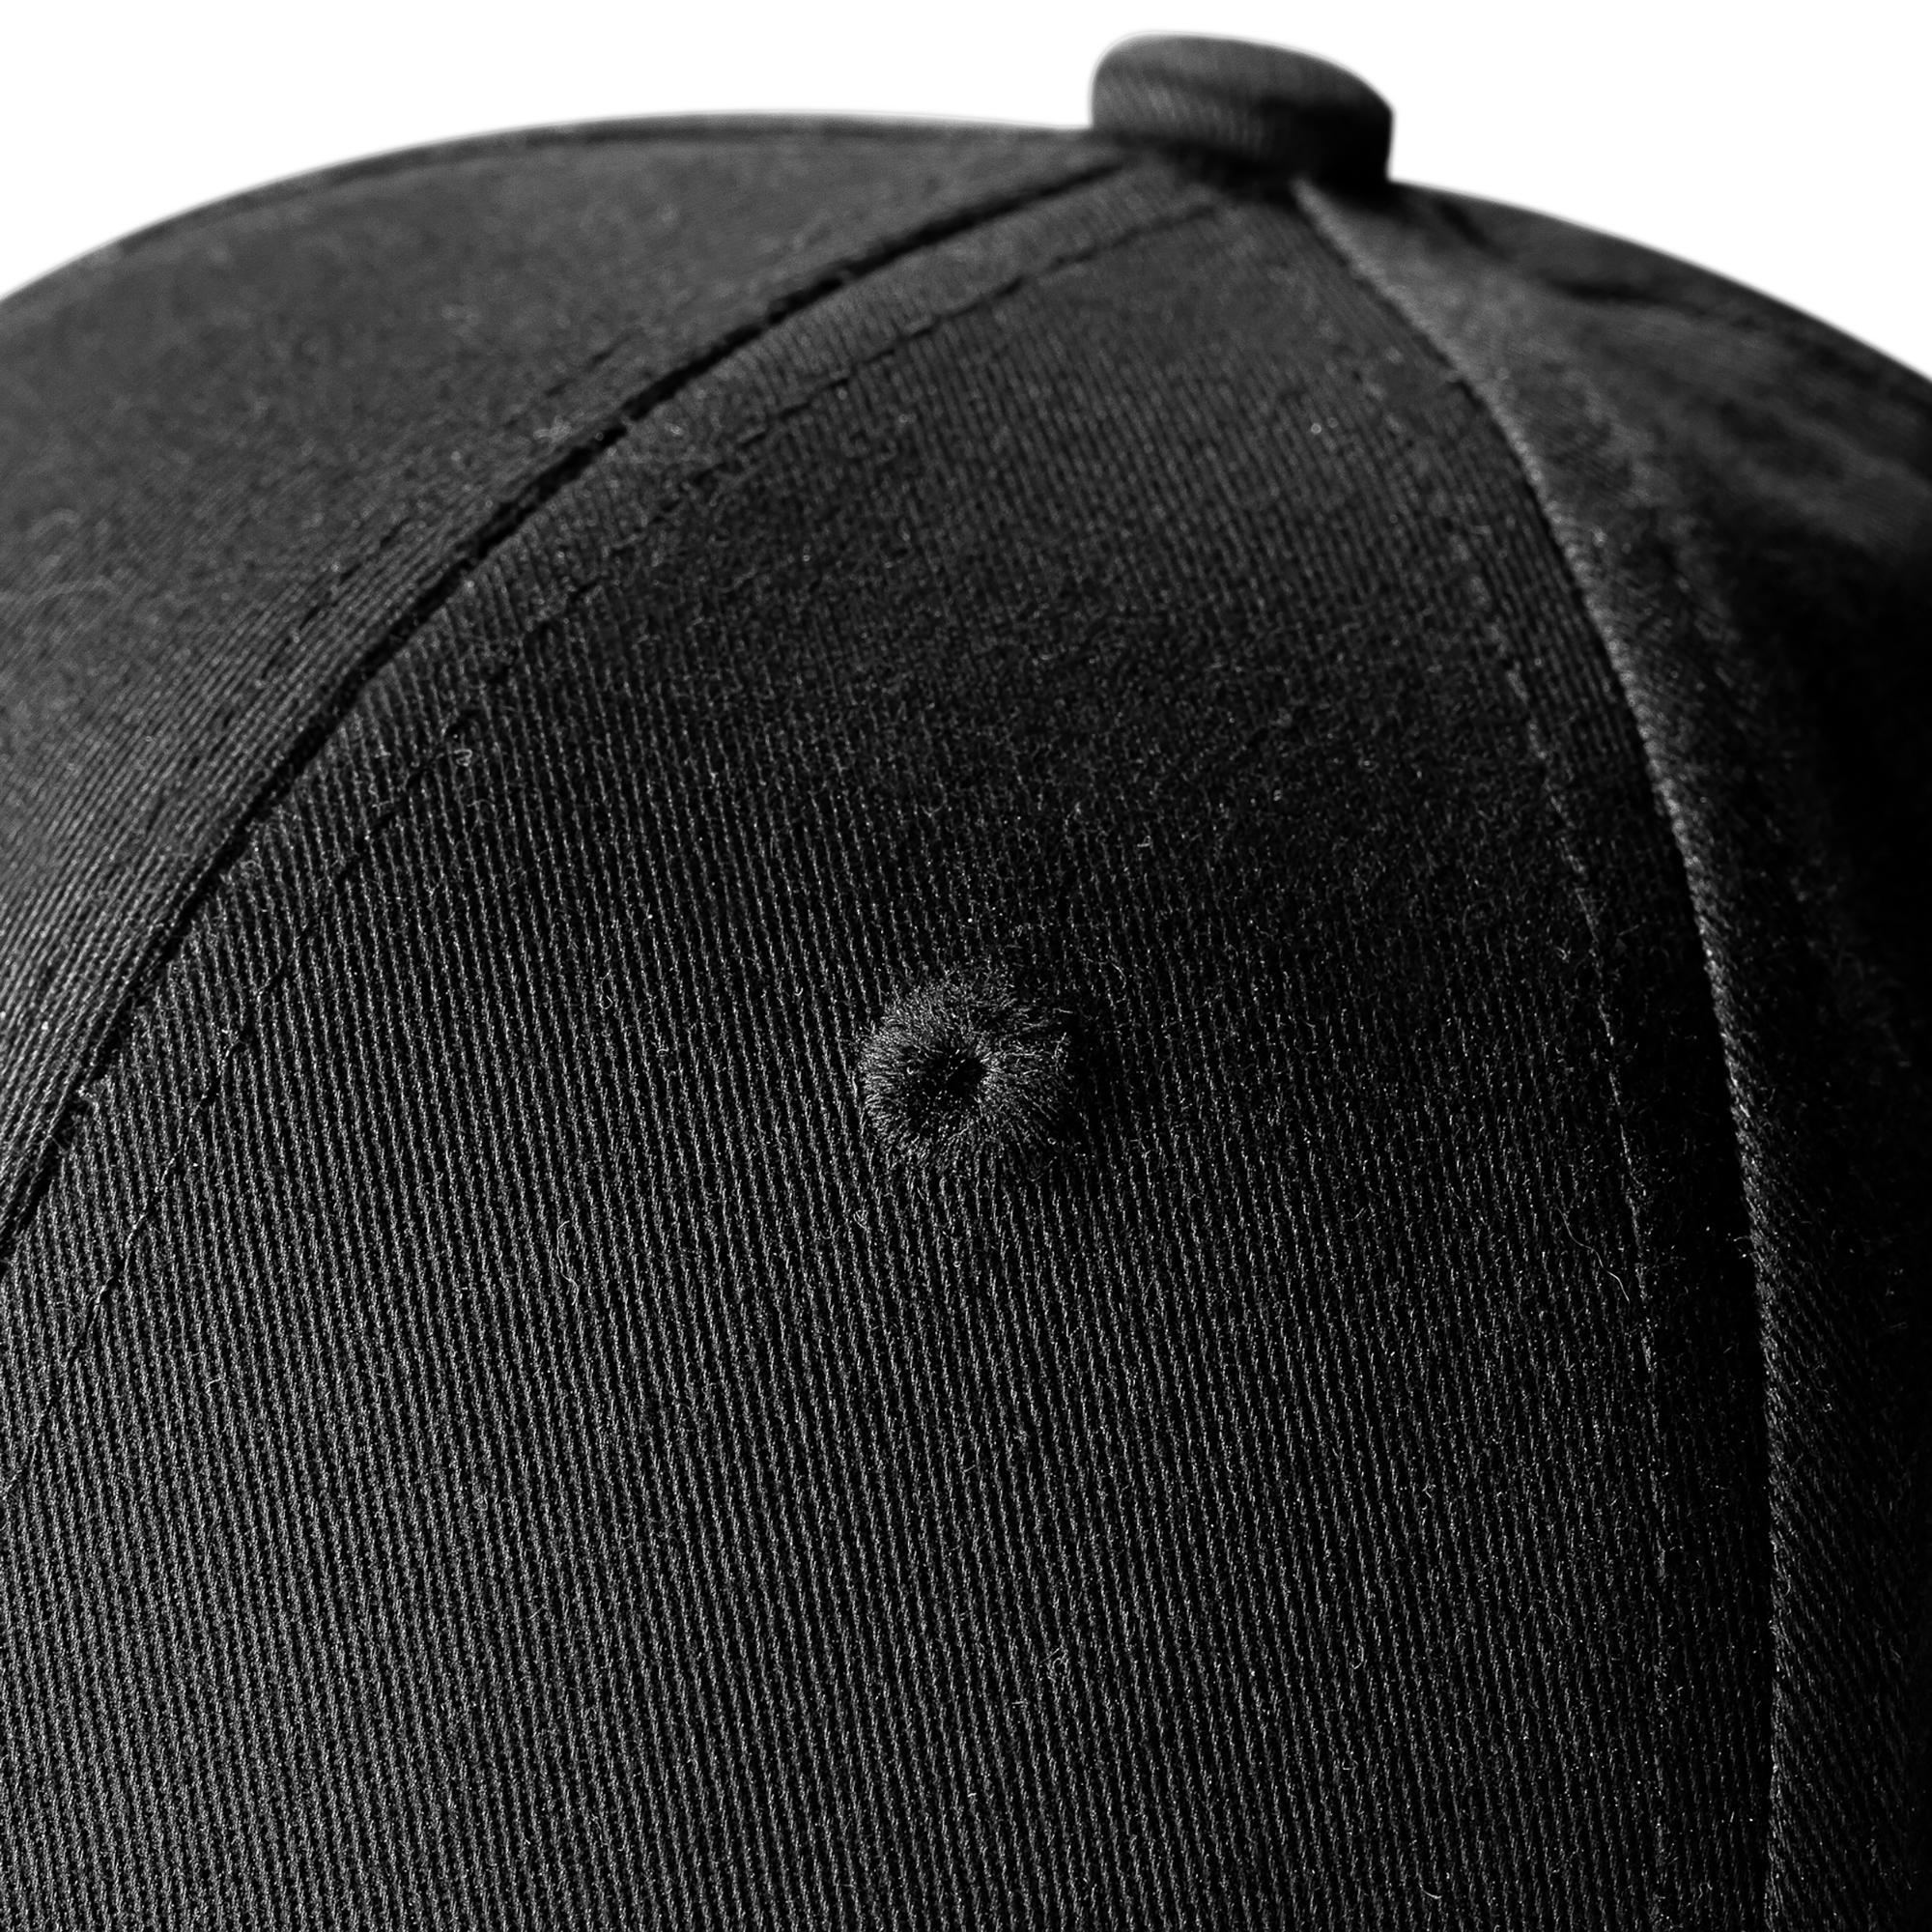 BASEBALL CAP BA500 Black JR 7/8